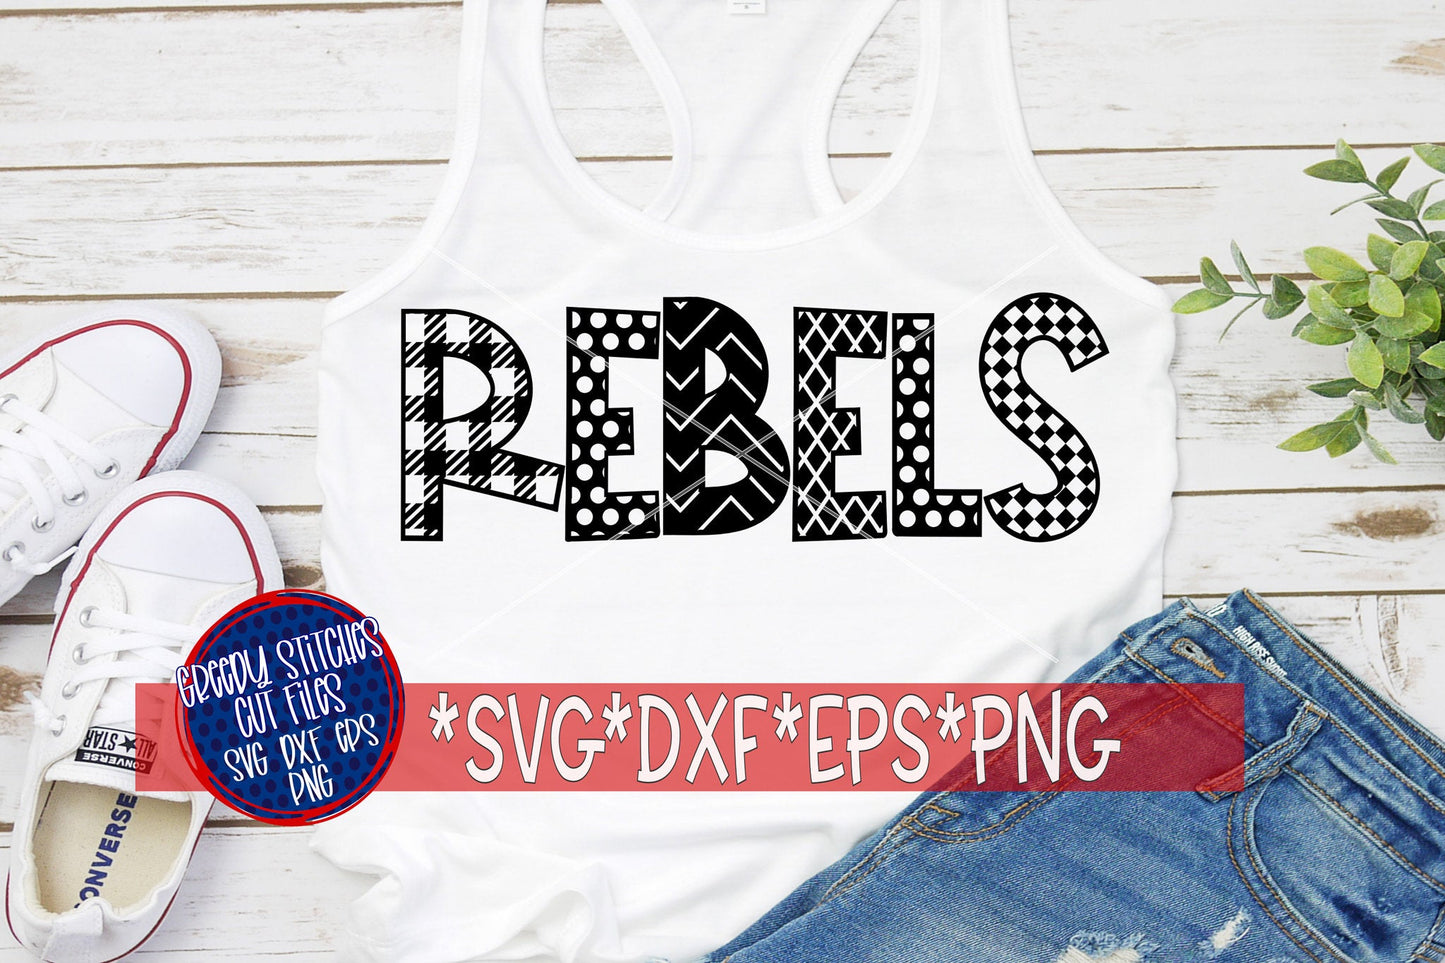 Rebels SvG | Rebels Word Art svg dxf eps png. Rebels word art SvG | Rebels DxF | Rebels word art EpS | Rebels SvG |Instant Download Cut File